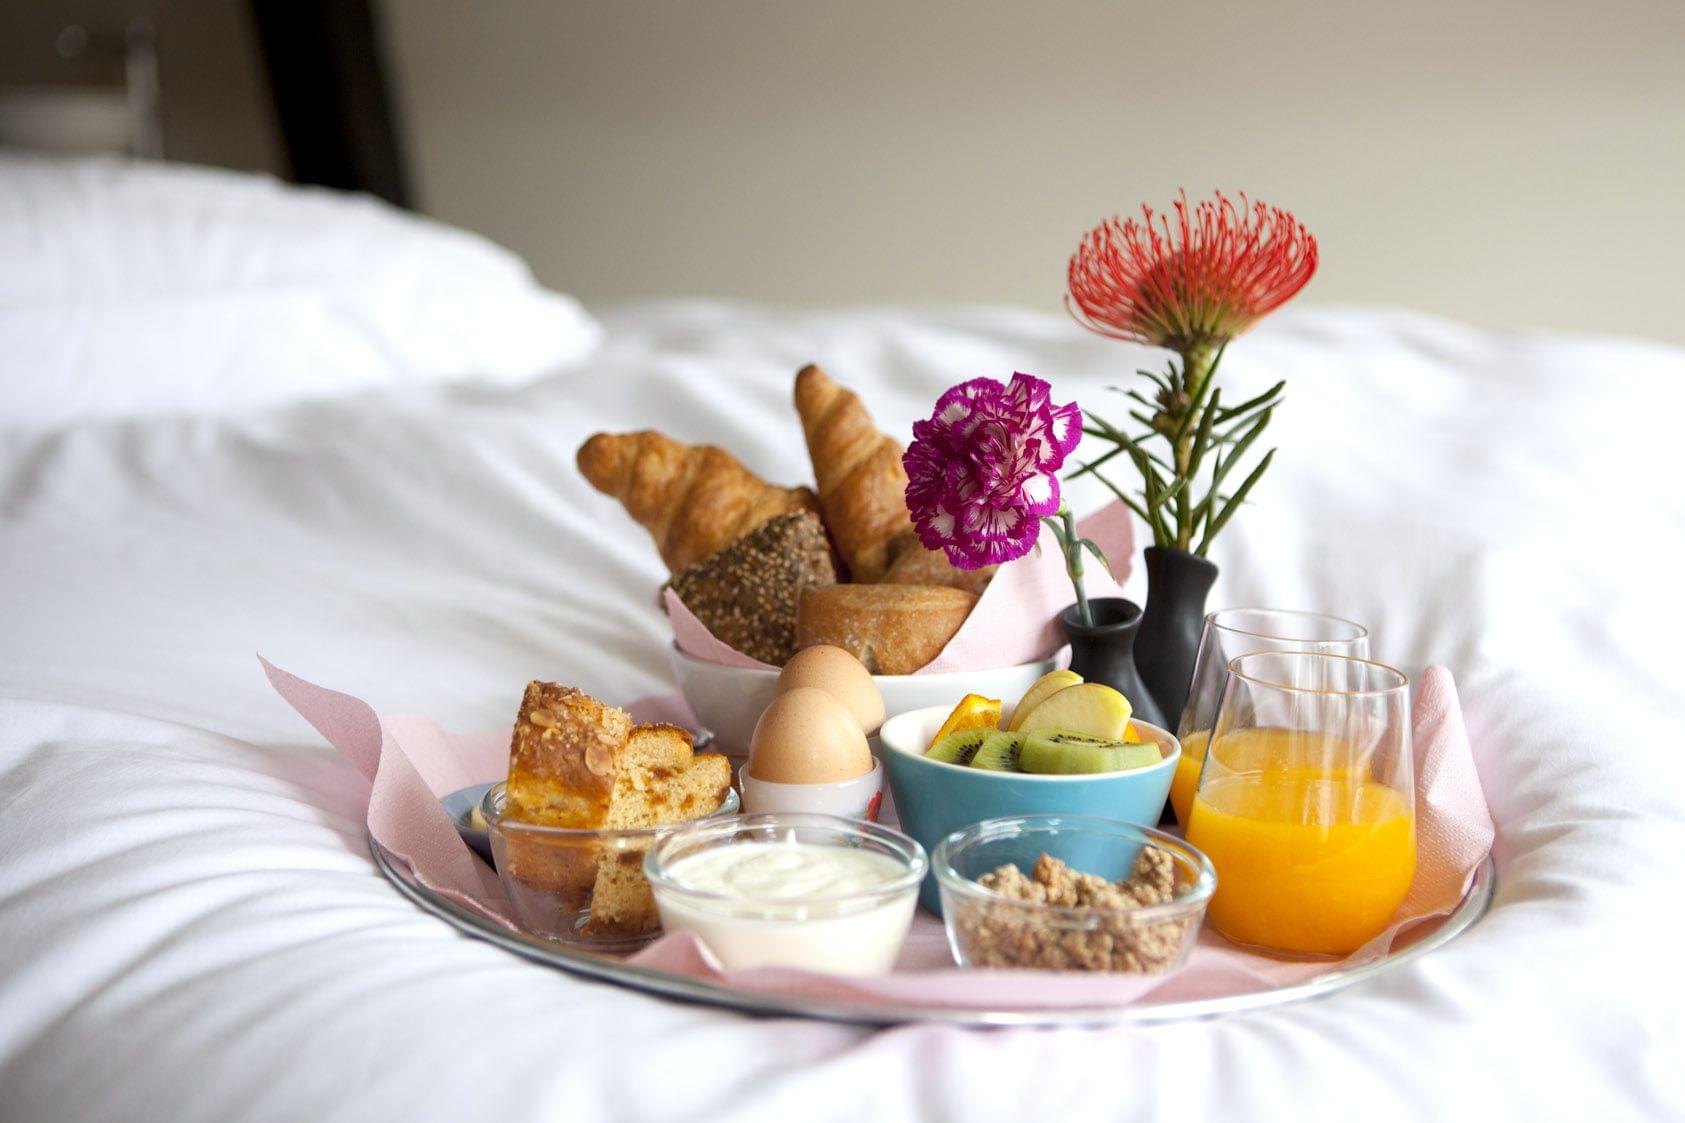 Foto: moederdag-ontbijt-op-bed-croissant-servies